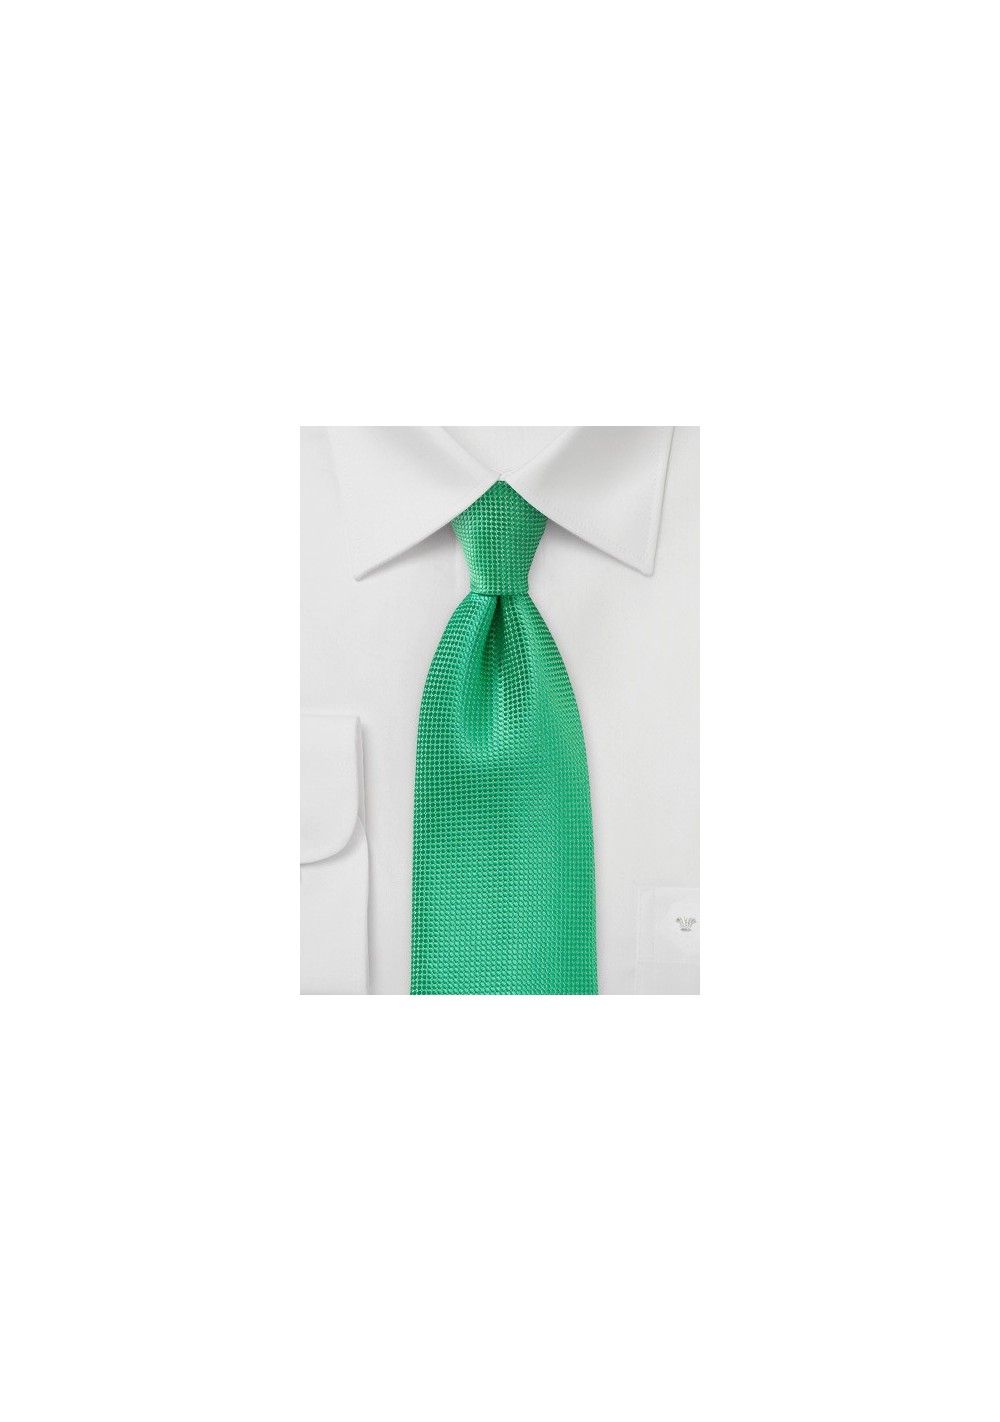 Textured Spring Green Necktie